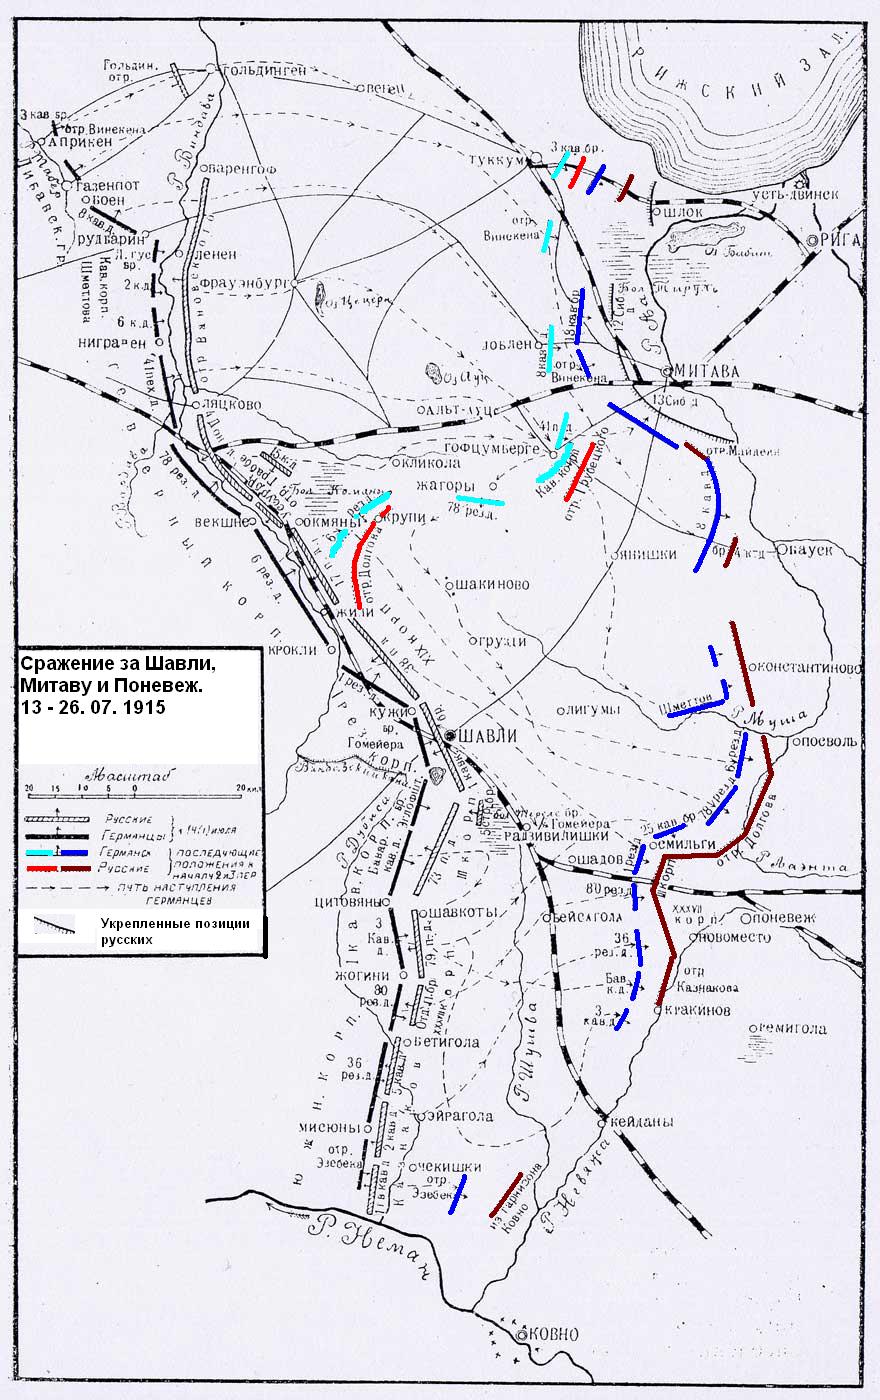 Схема сражения за Шавли, Митаву и Поневеж, 14 - 26 июля 1915 года